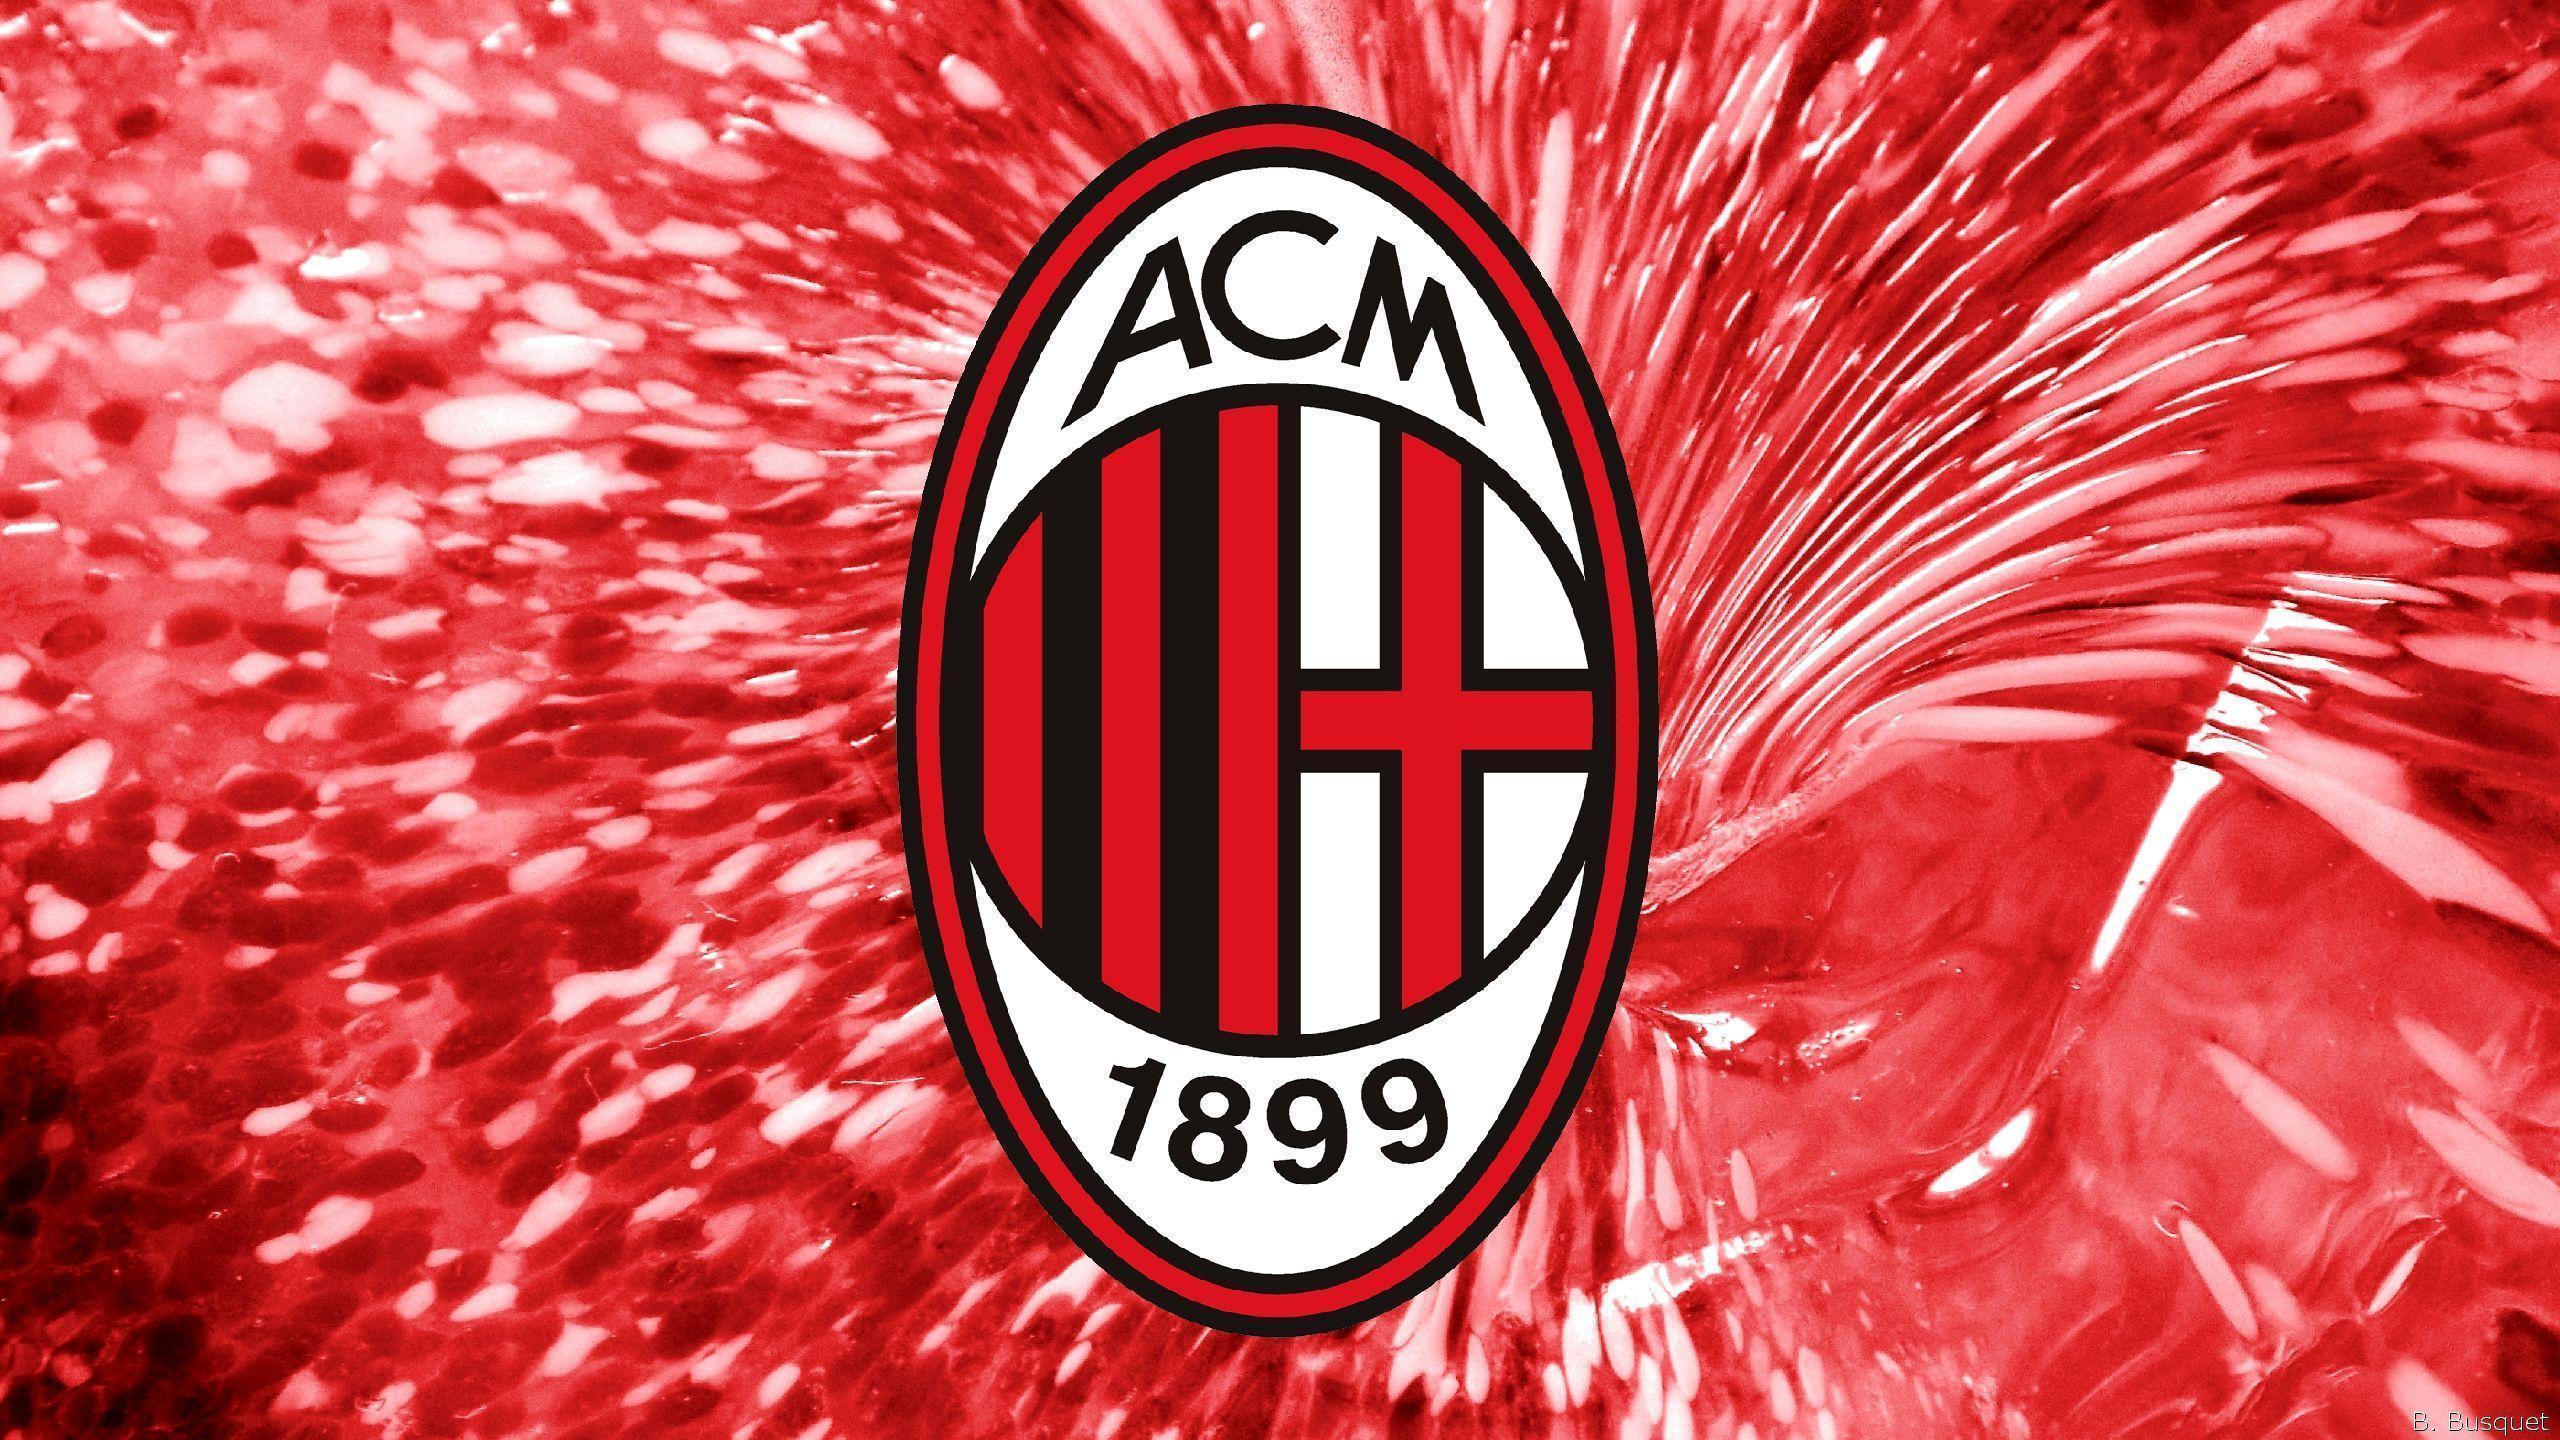 Ac Milan Logo Wallpapers 2016 - Wallpaper Cave